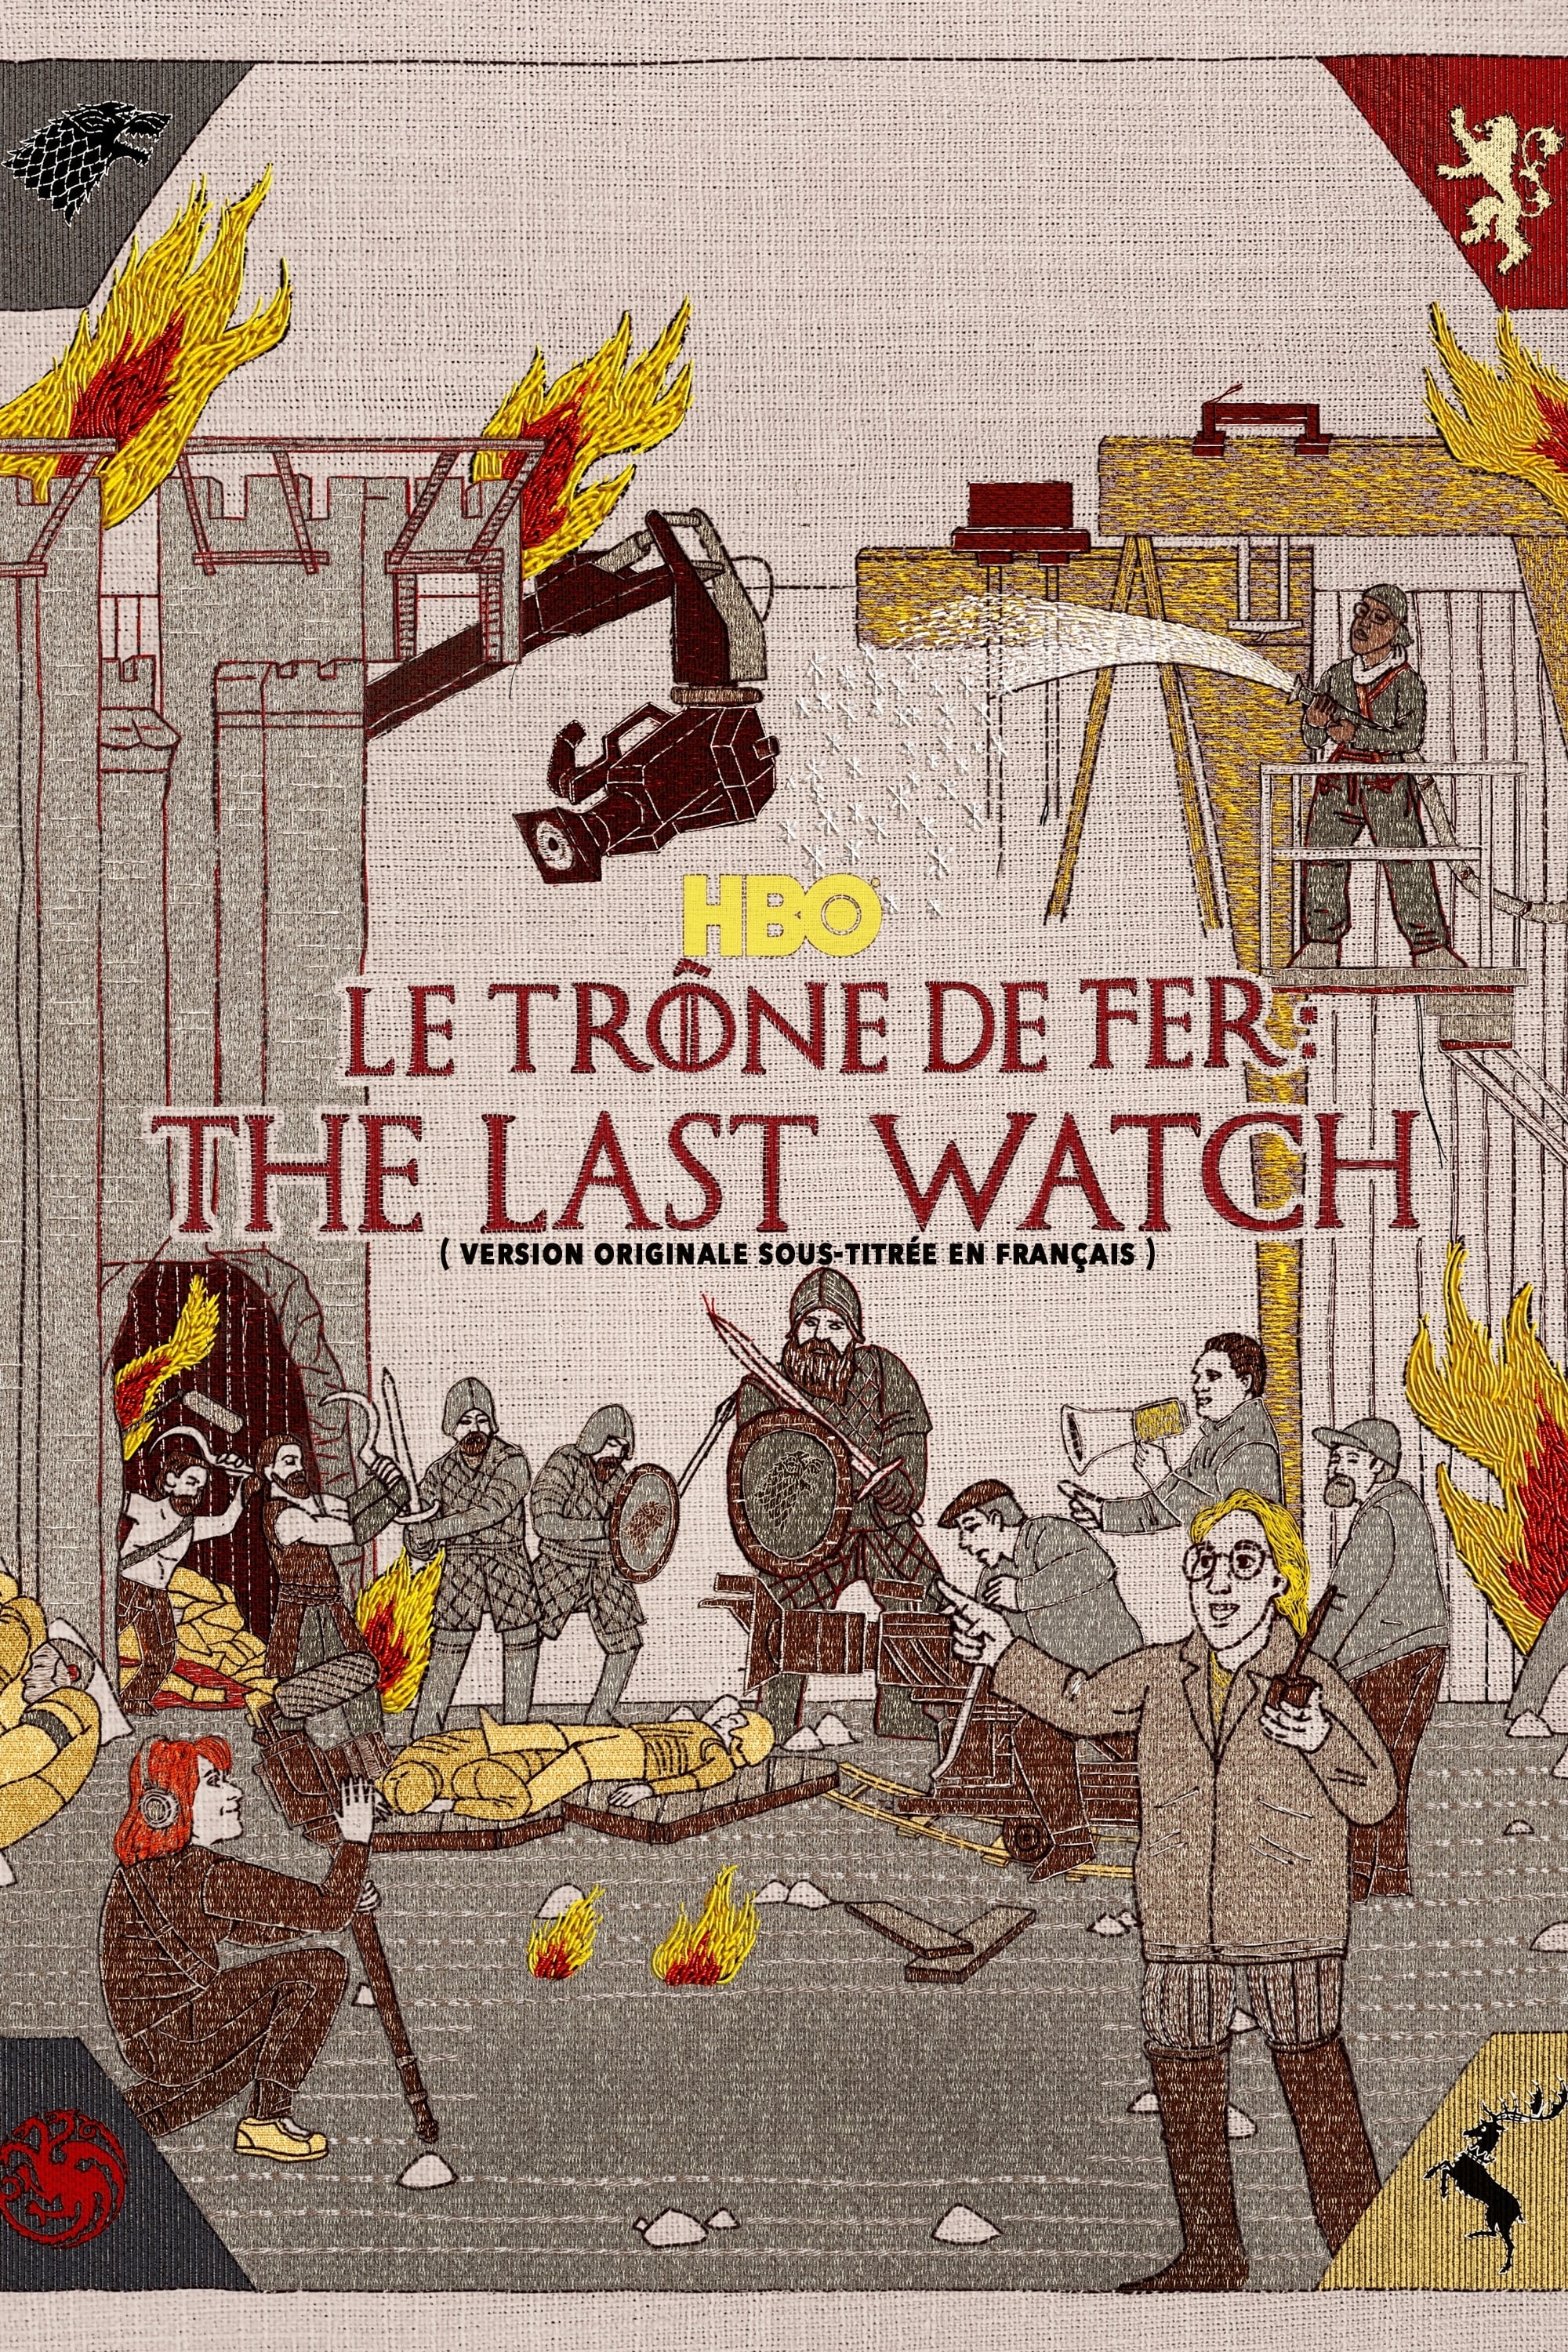 Le Trône de Fer: The Last Watch